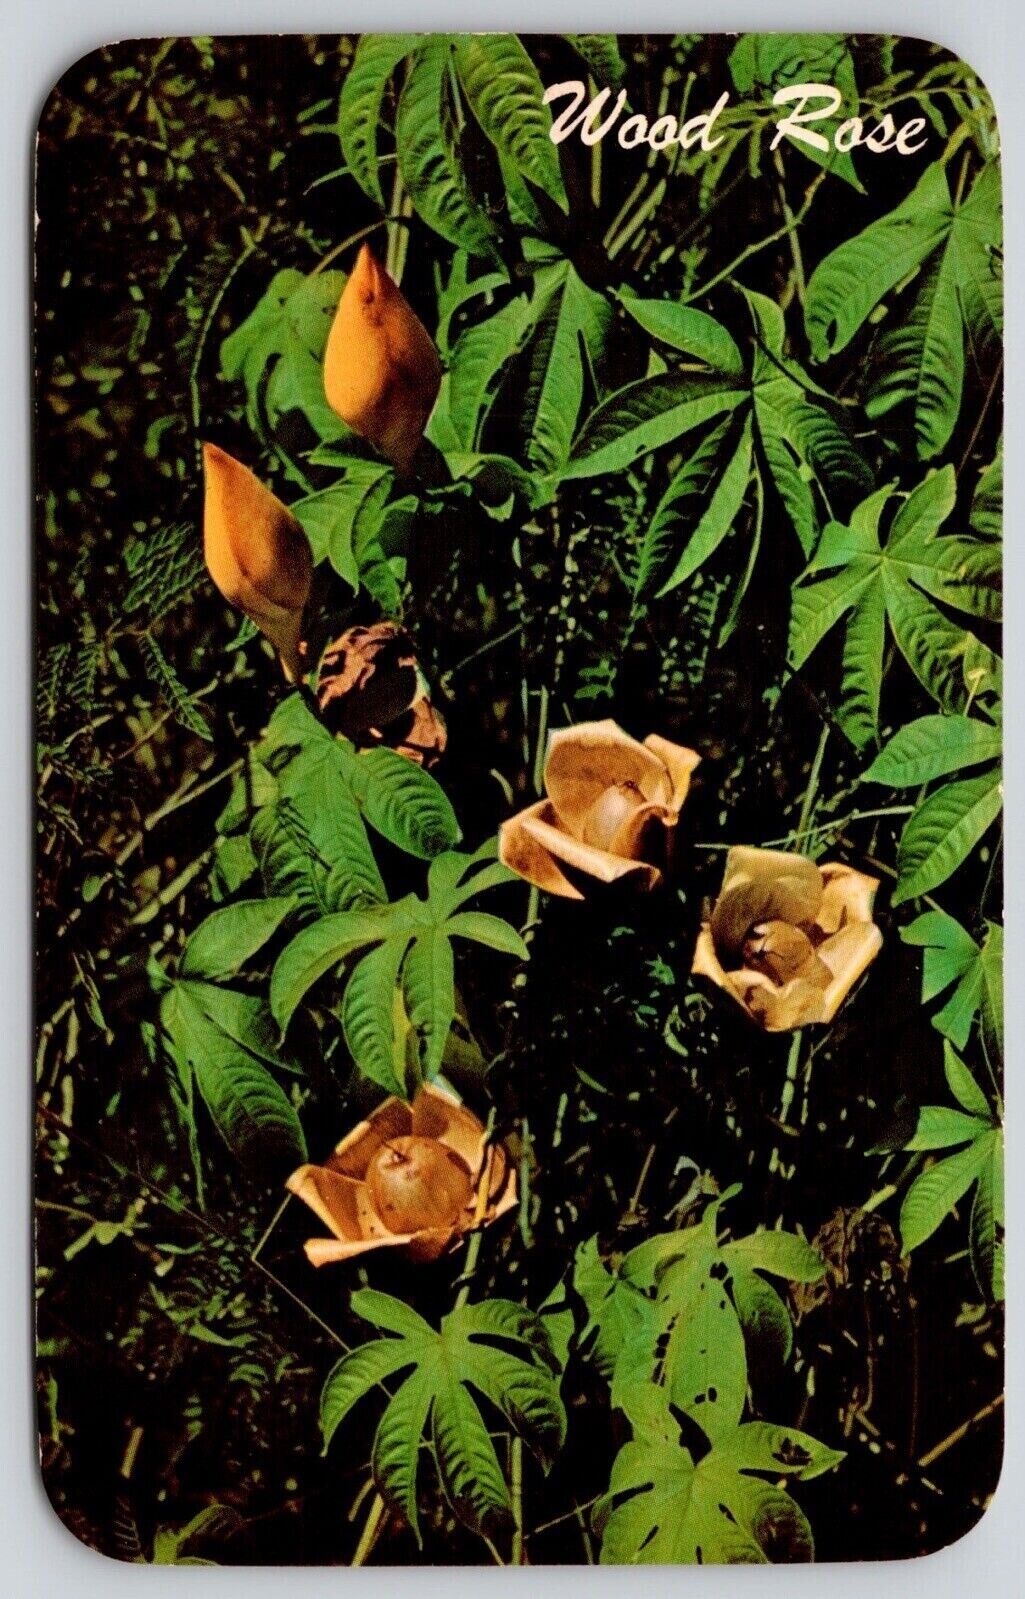 Wood Rose Ipomea Tuberosa Morning Glory Family Postcard UNP VTG Unused Vintage